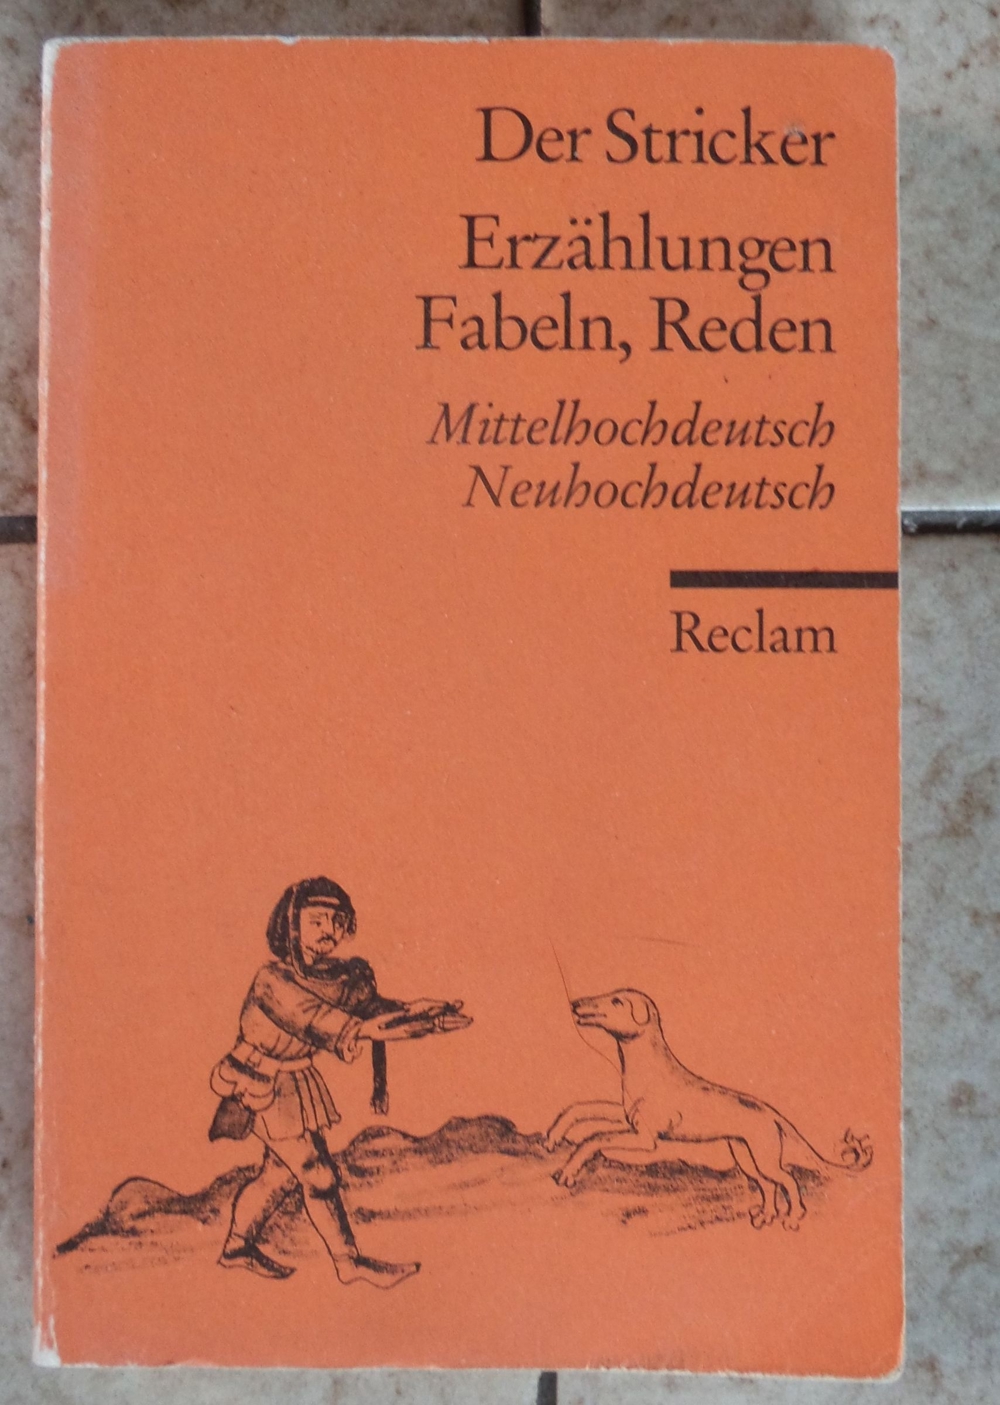 Der Stricker; Erzählungen, Fabeln, Reden; Mittelhochdeutsch, Neuhochdeutsch;